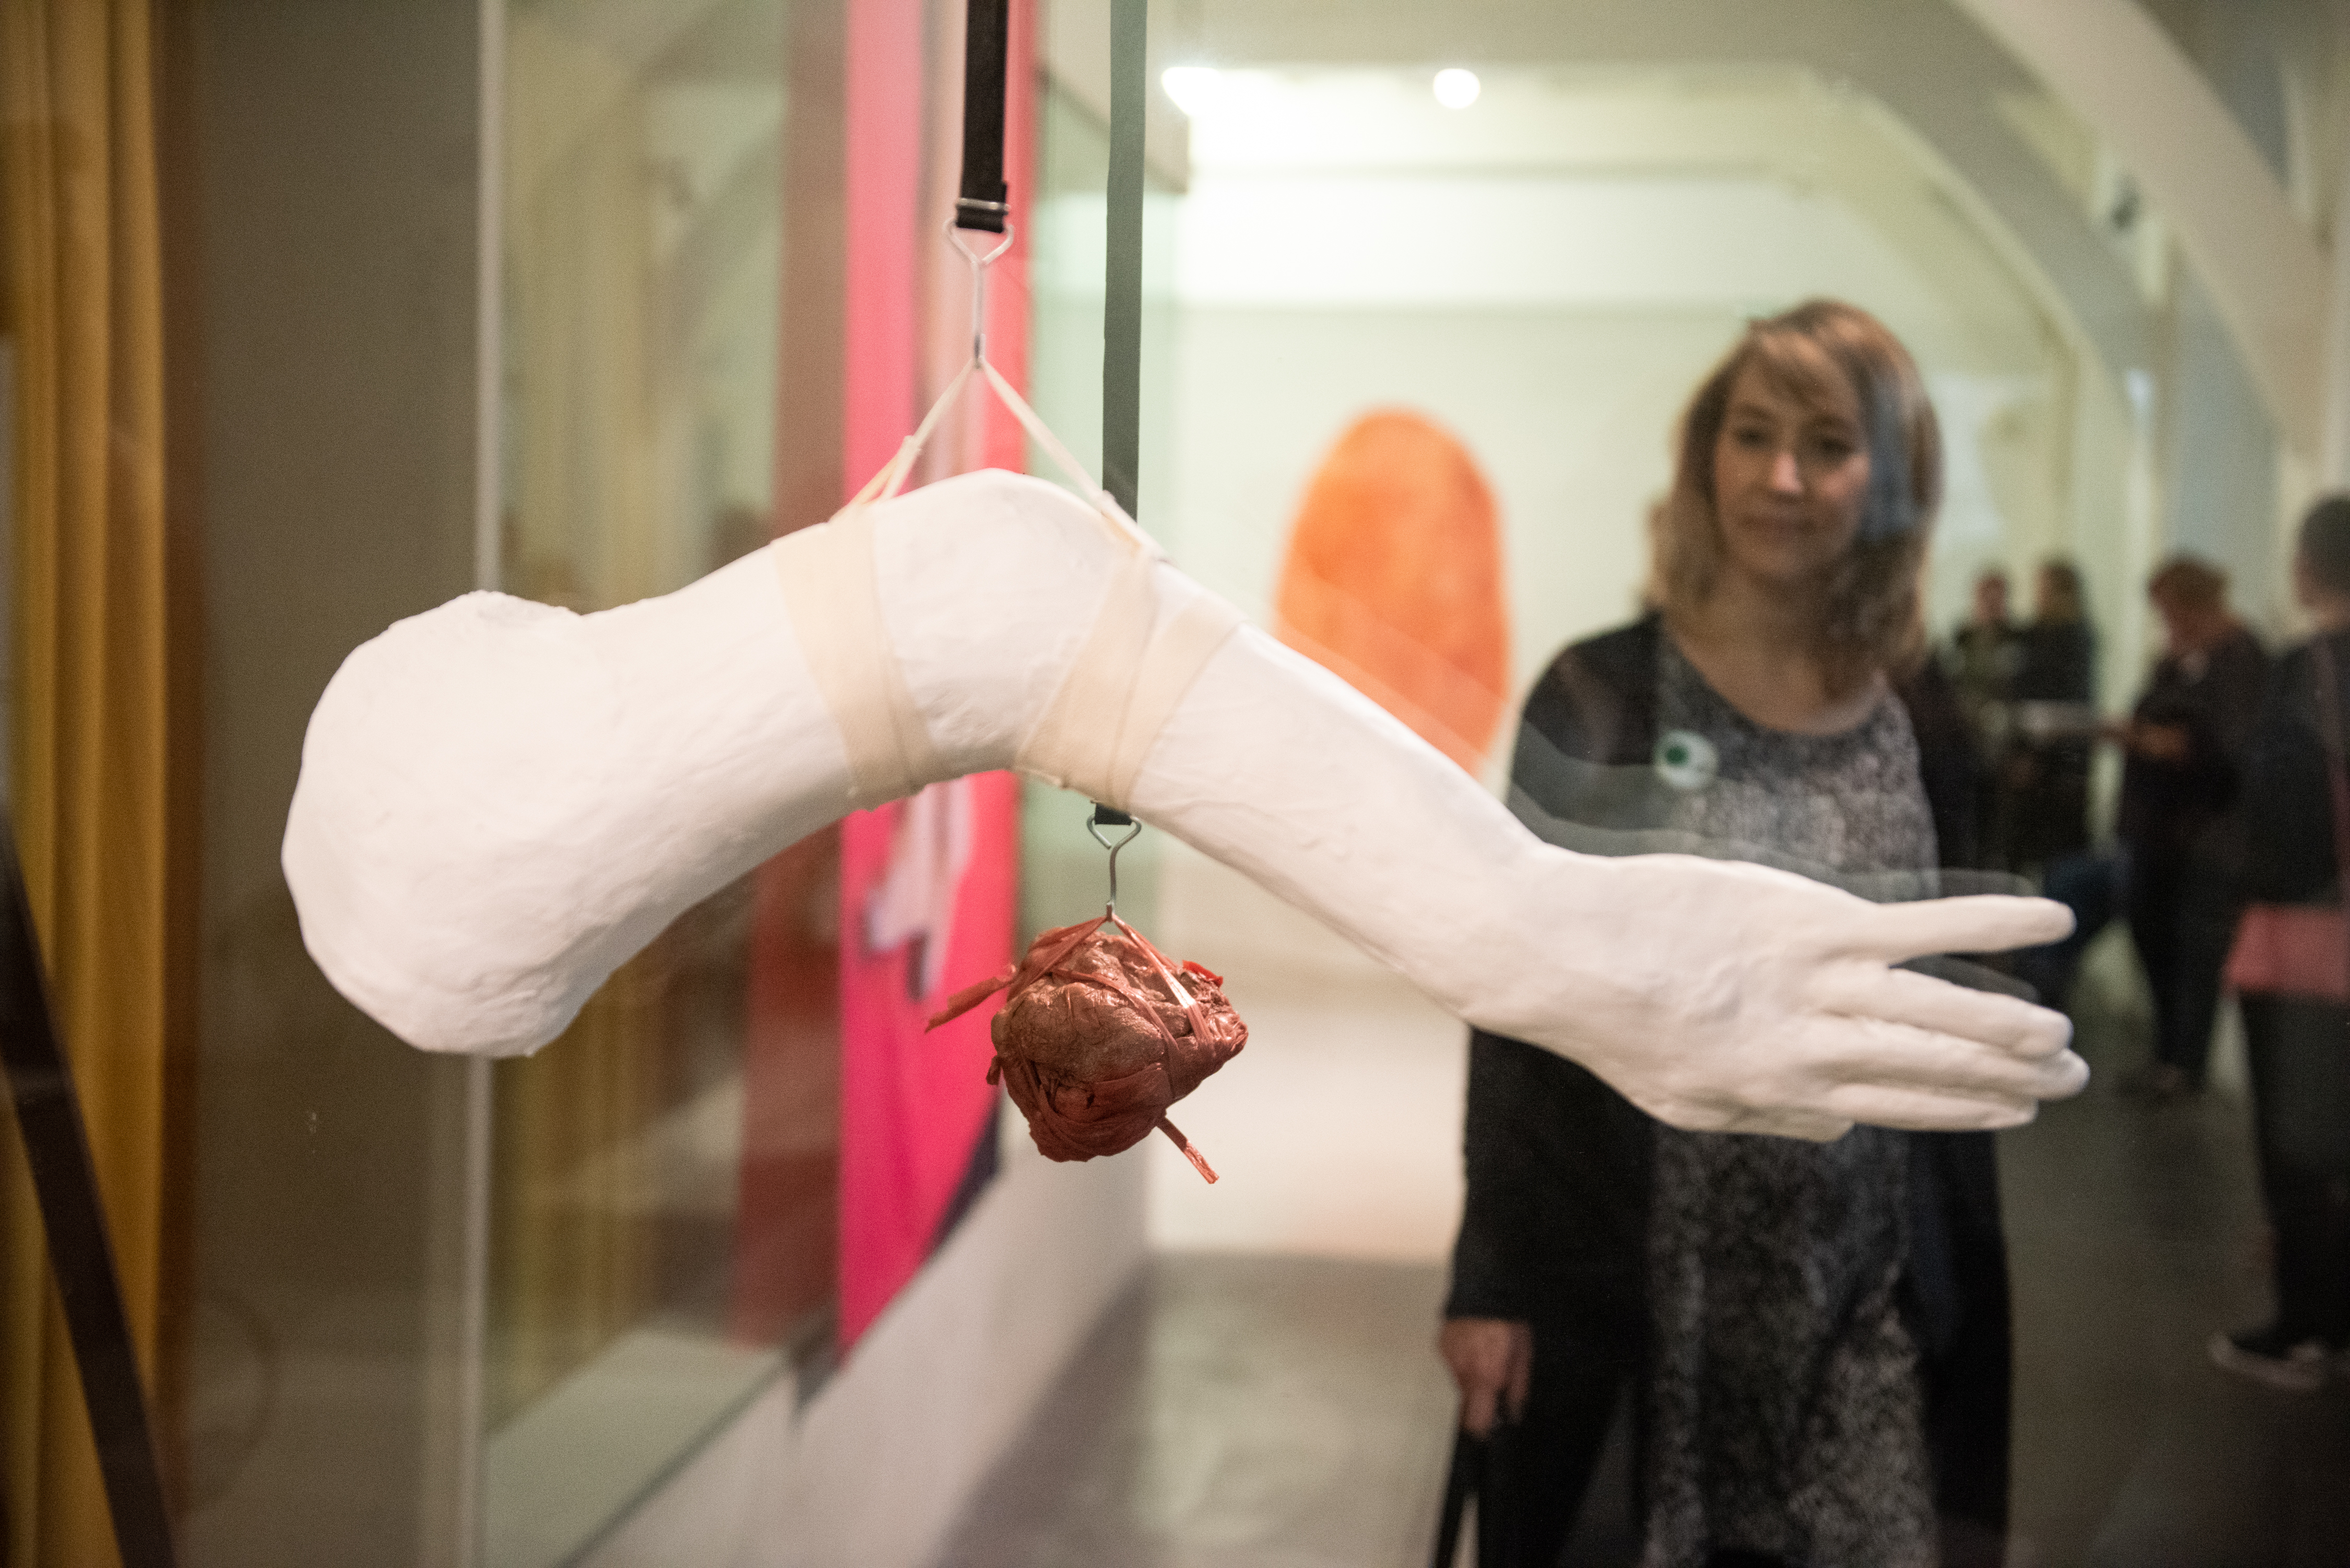 een bezoeker bekijkt de tentoonstelling door een glazen wand